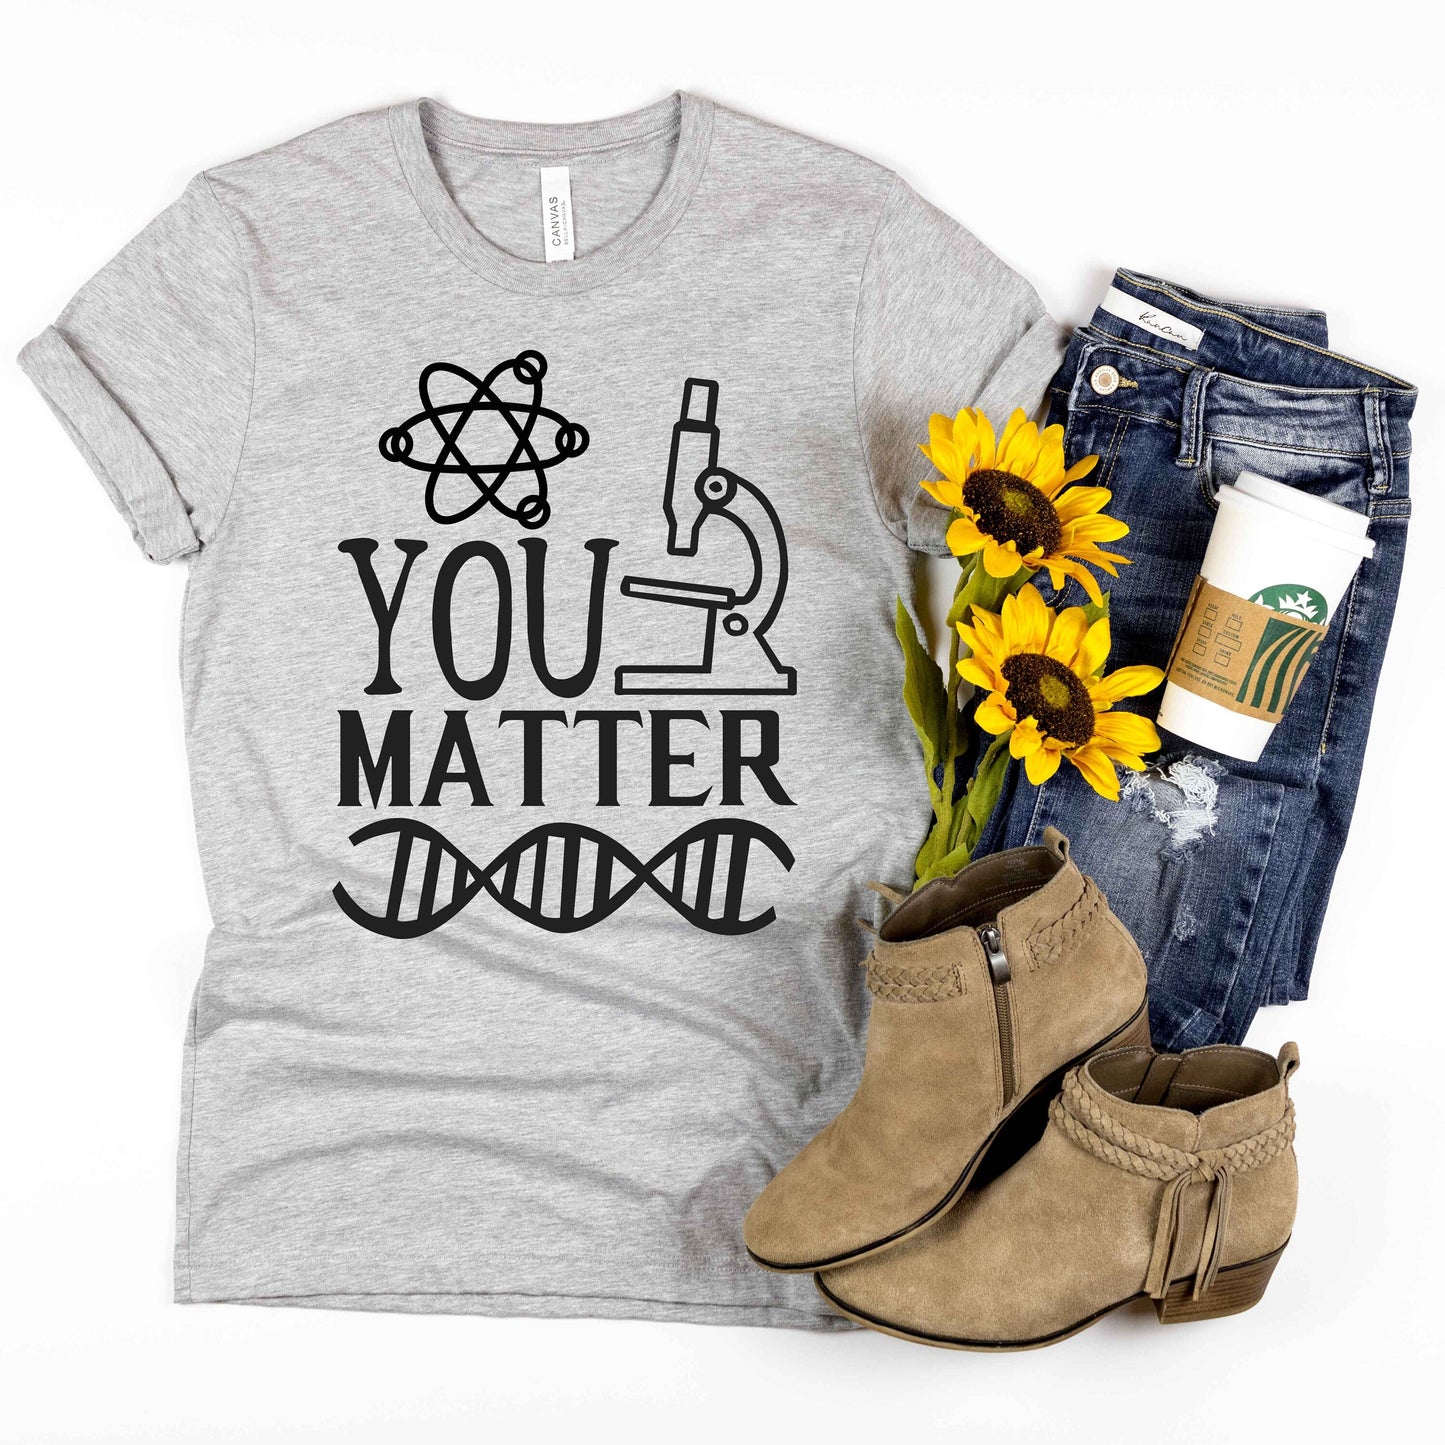 You Matter unisex fit t-shirt • science teacher gift • scientist shirt • chemistry shirt • nerd shirt